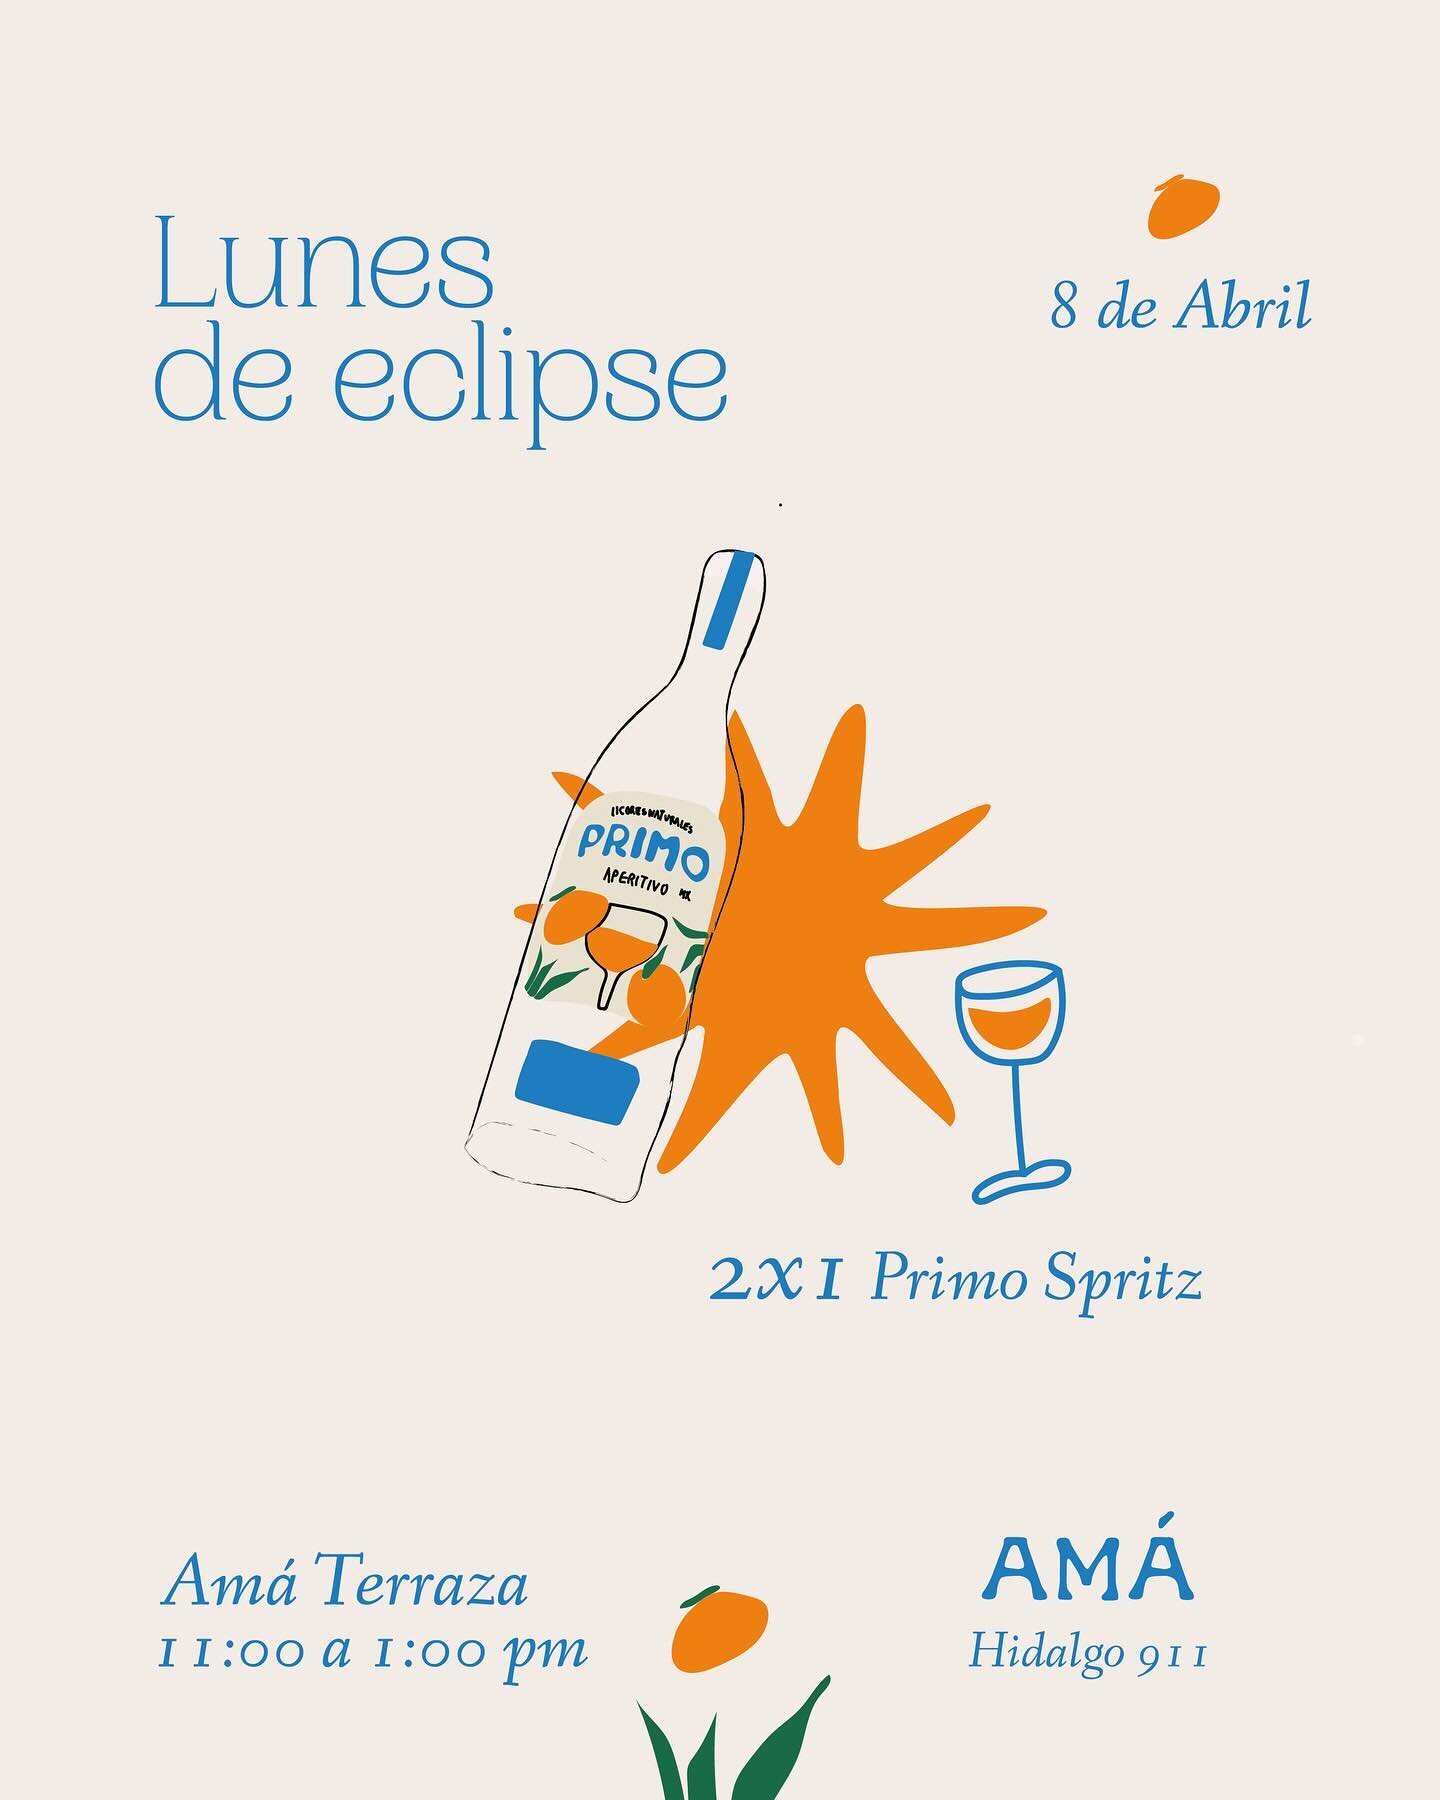 &iexcl;Lunes de eclipse! 🌅✨

&iexcl;Nos vemos este 8 de Abril! 

Disfruta de unos Primos Spritz mientras vemos el eclipse en Am&aacute; 🧡